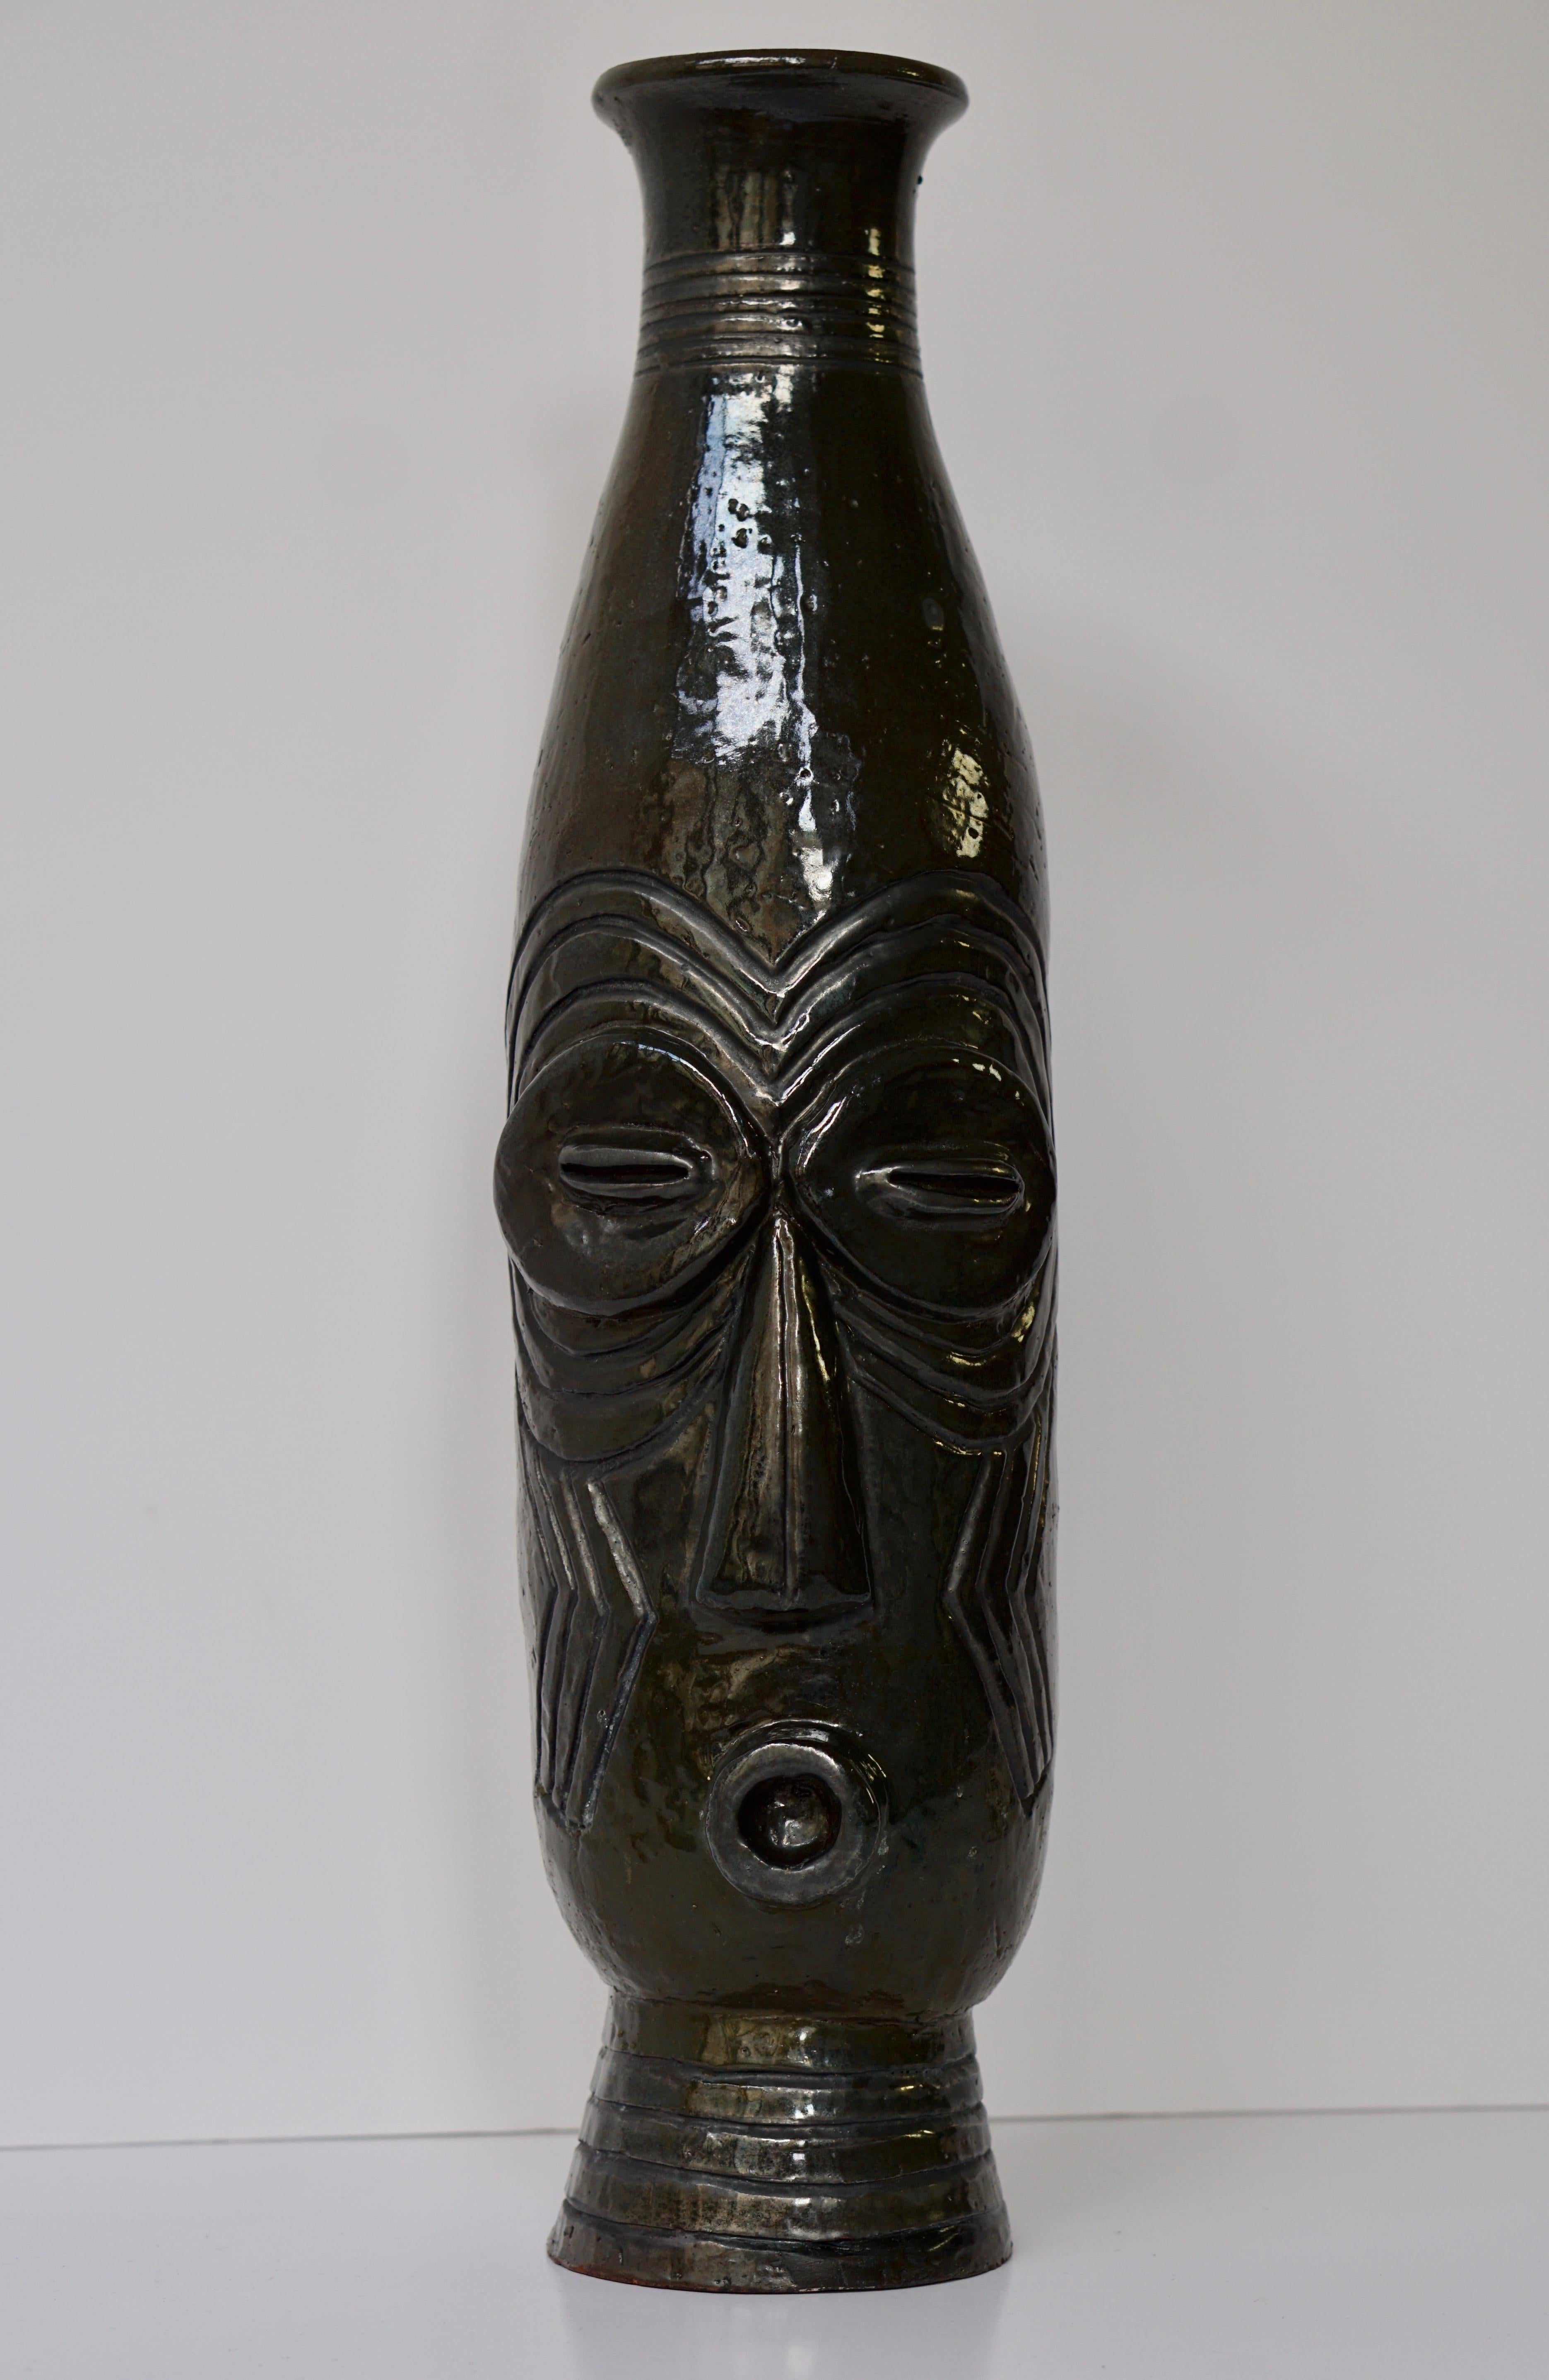 Schöne afrikanische Stammesvase mit einem Gesicht; das Stück ist sehr gut gemacht. Sehr cooles Einzelstück.
Maße: Höhe 52 cm.
Durchmesser 14 cm.
Gewicht 3 kg.